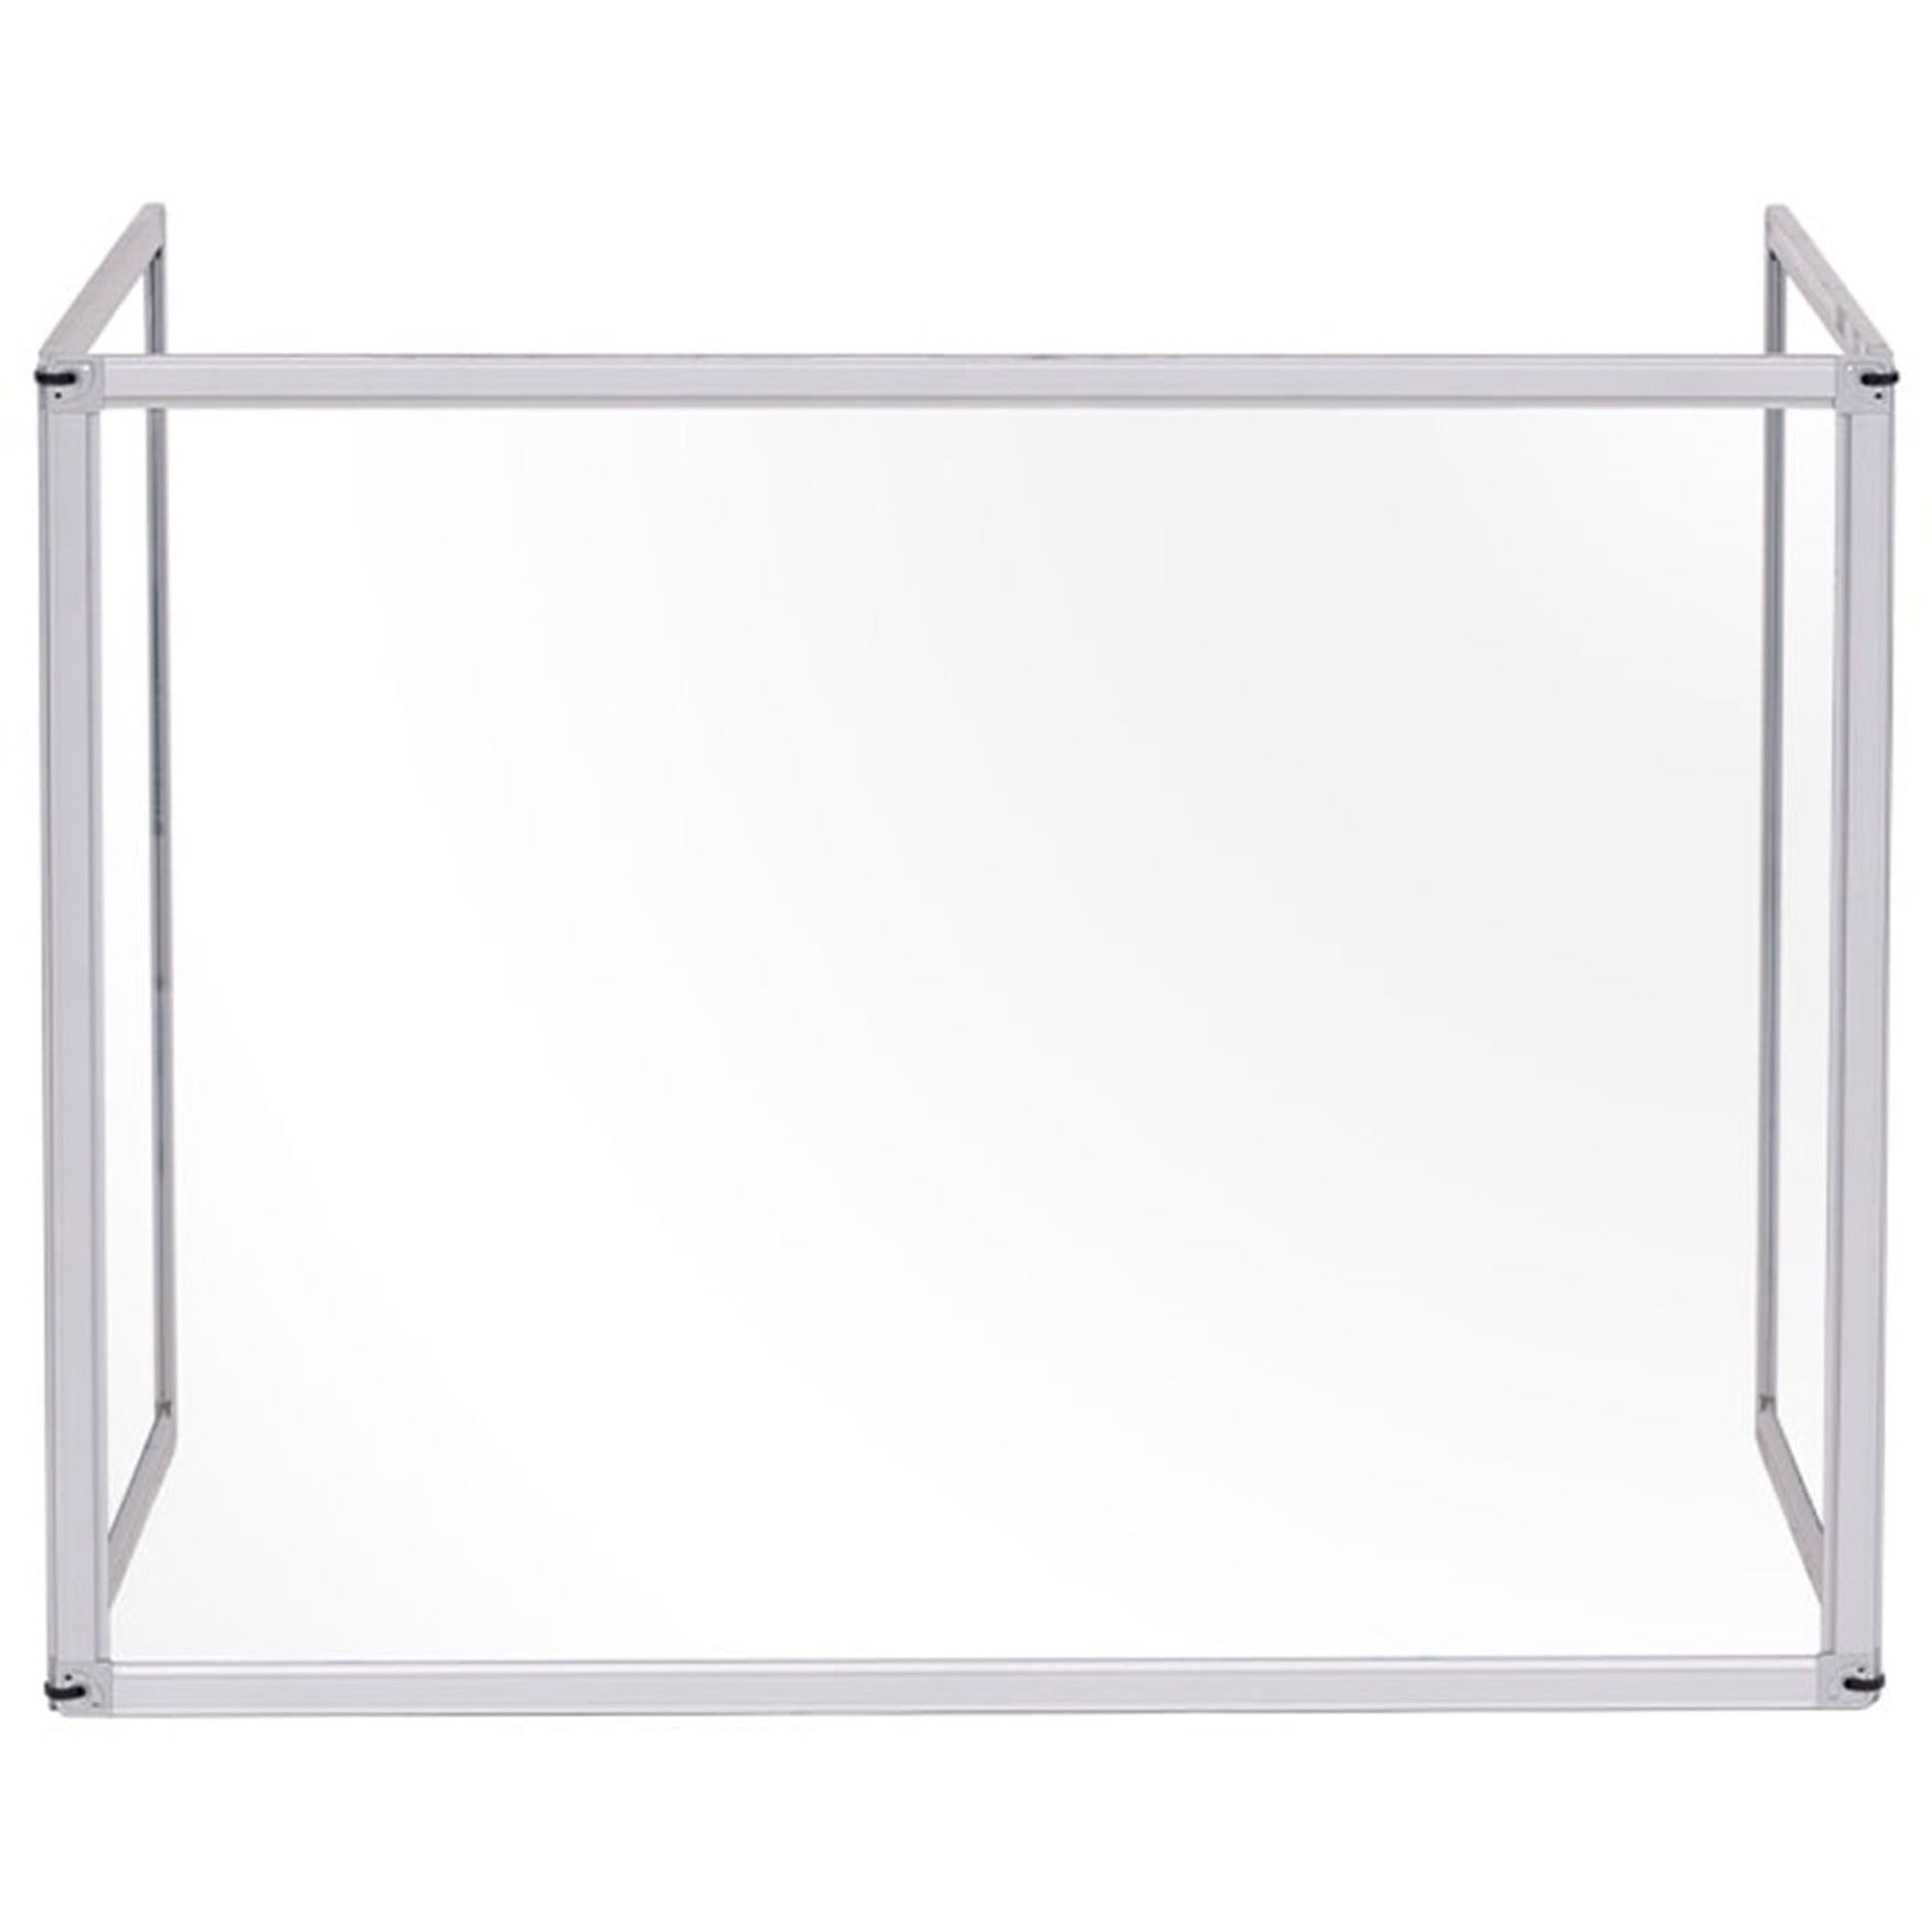 bi-silque-desktop-divider-glass-barrier-354-width-x-05-depth-x-236-height-x-532-length-1-each-aluminum-glass_bvcgl07219101 - 1